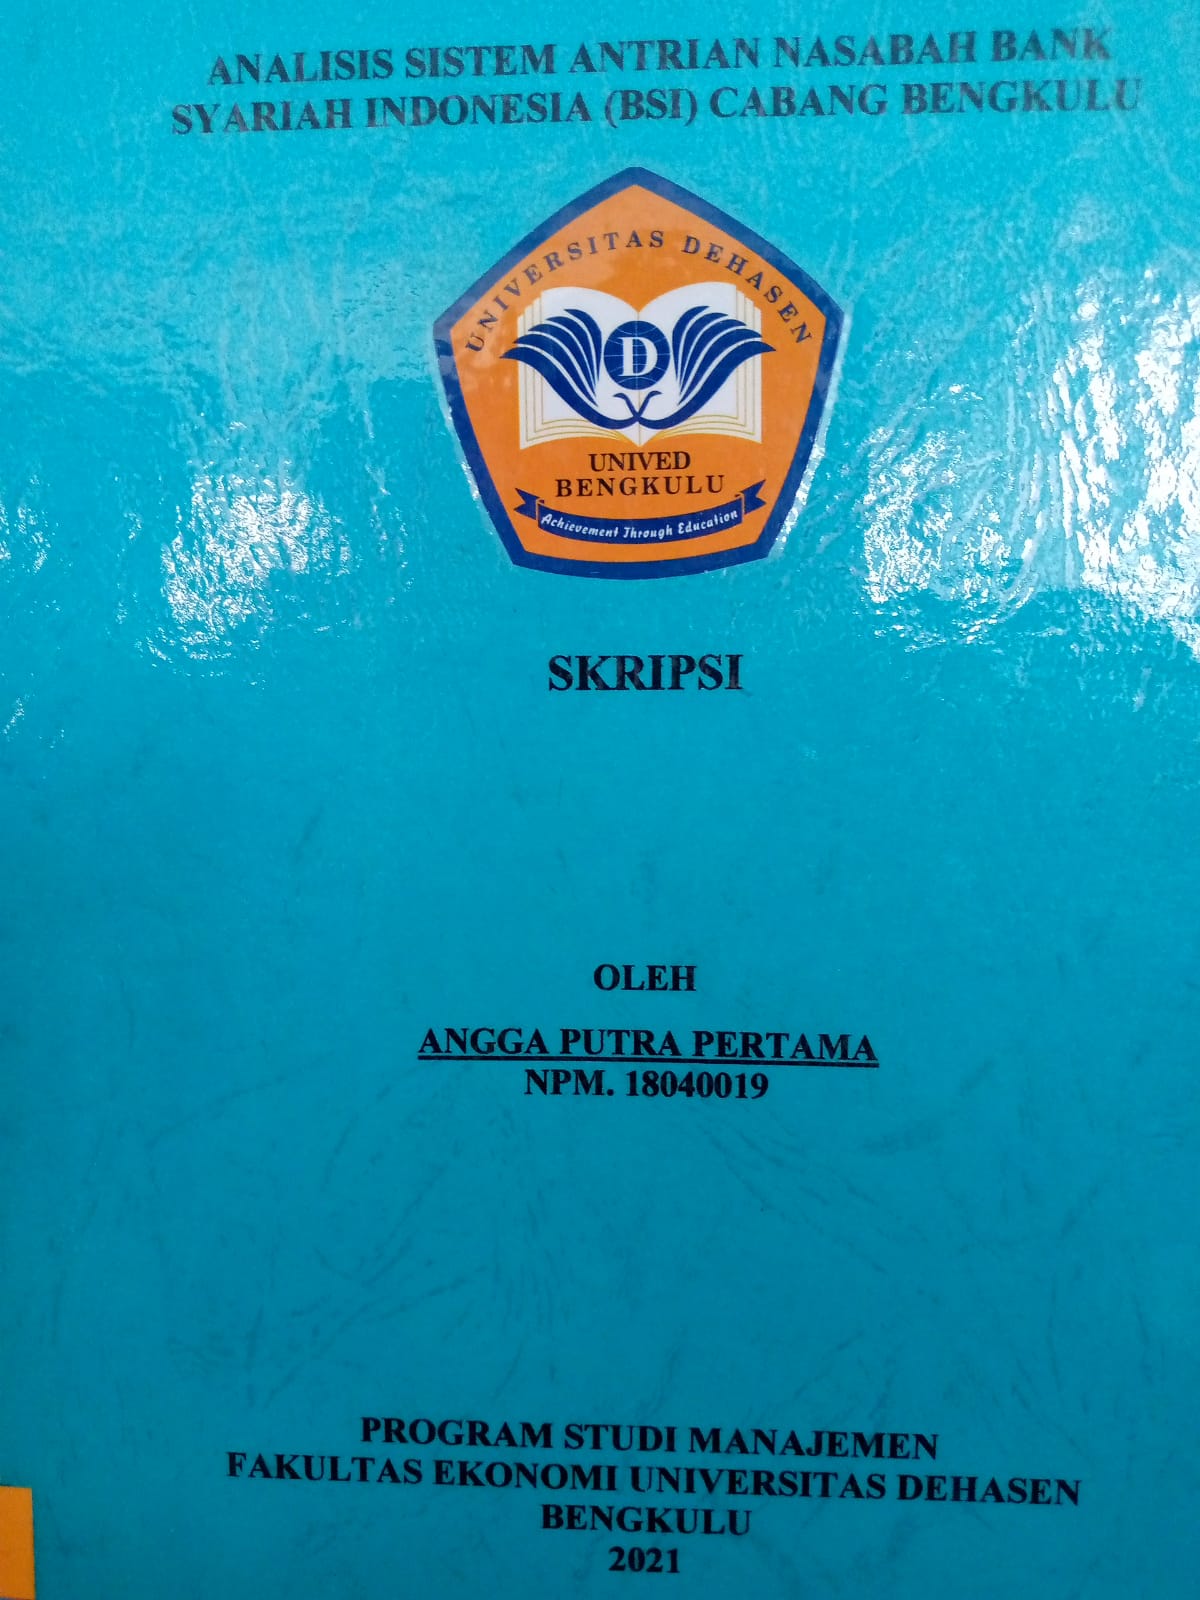 Analisis Sistem Antrian Nasabah Bank Syariah Indonesia (BSI) Cabang Bengkulu